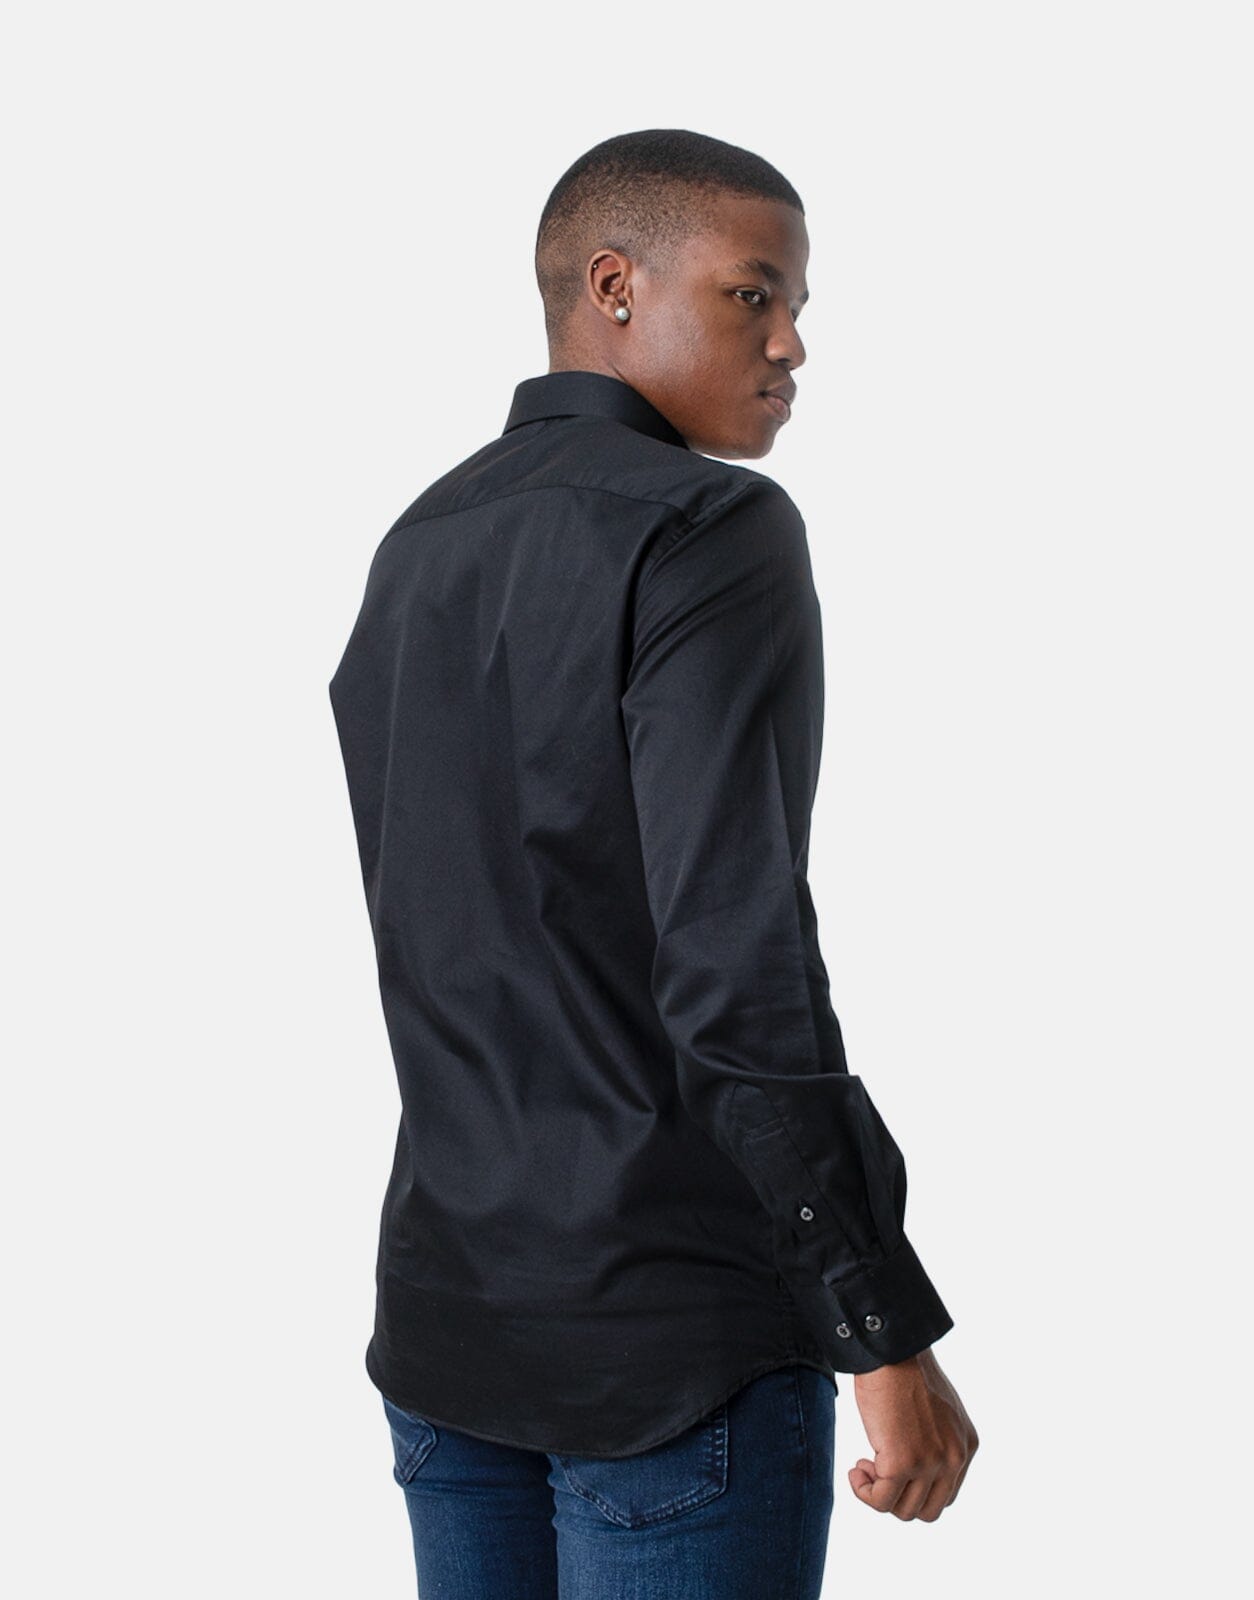 Polo Custom Fit Greig Shirt Black - Subwear